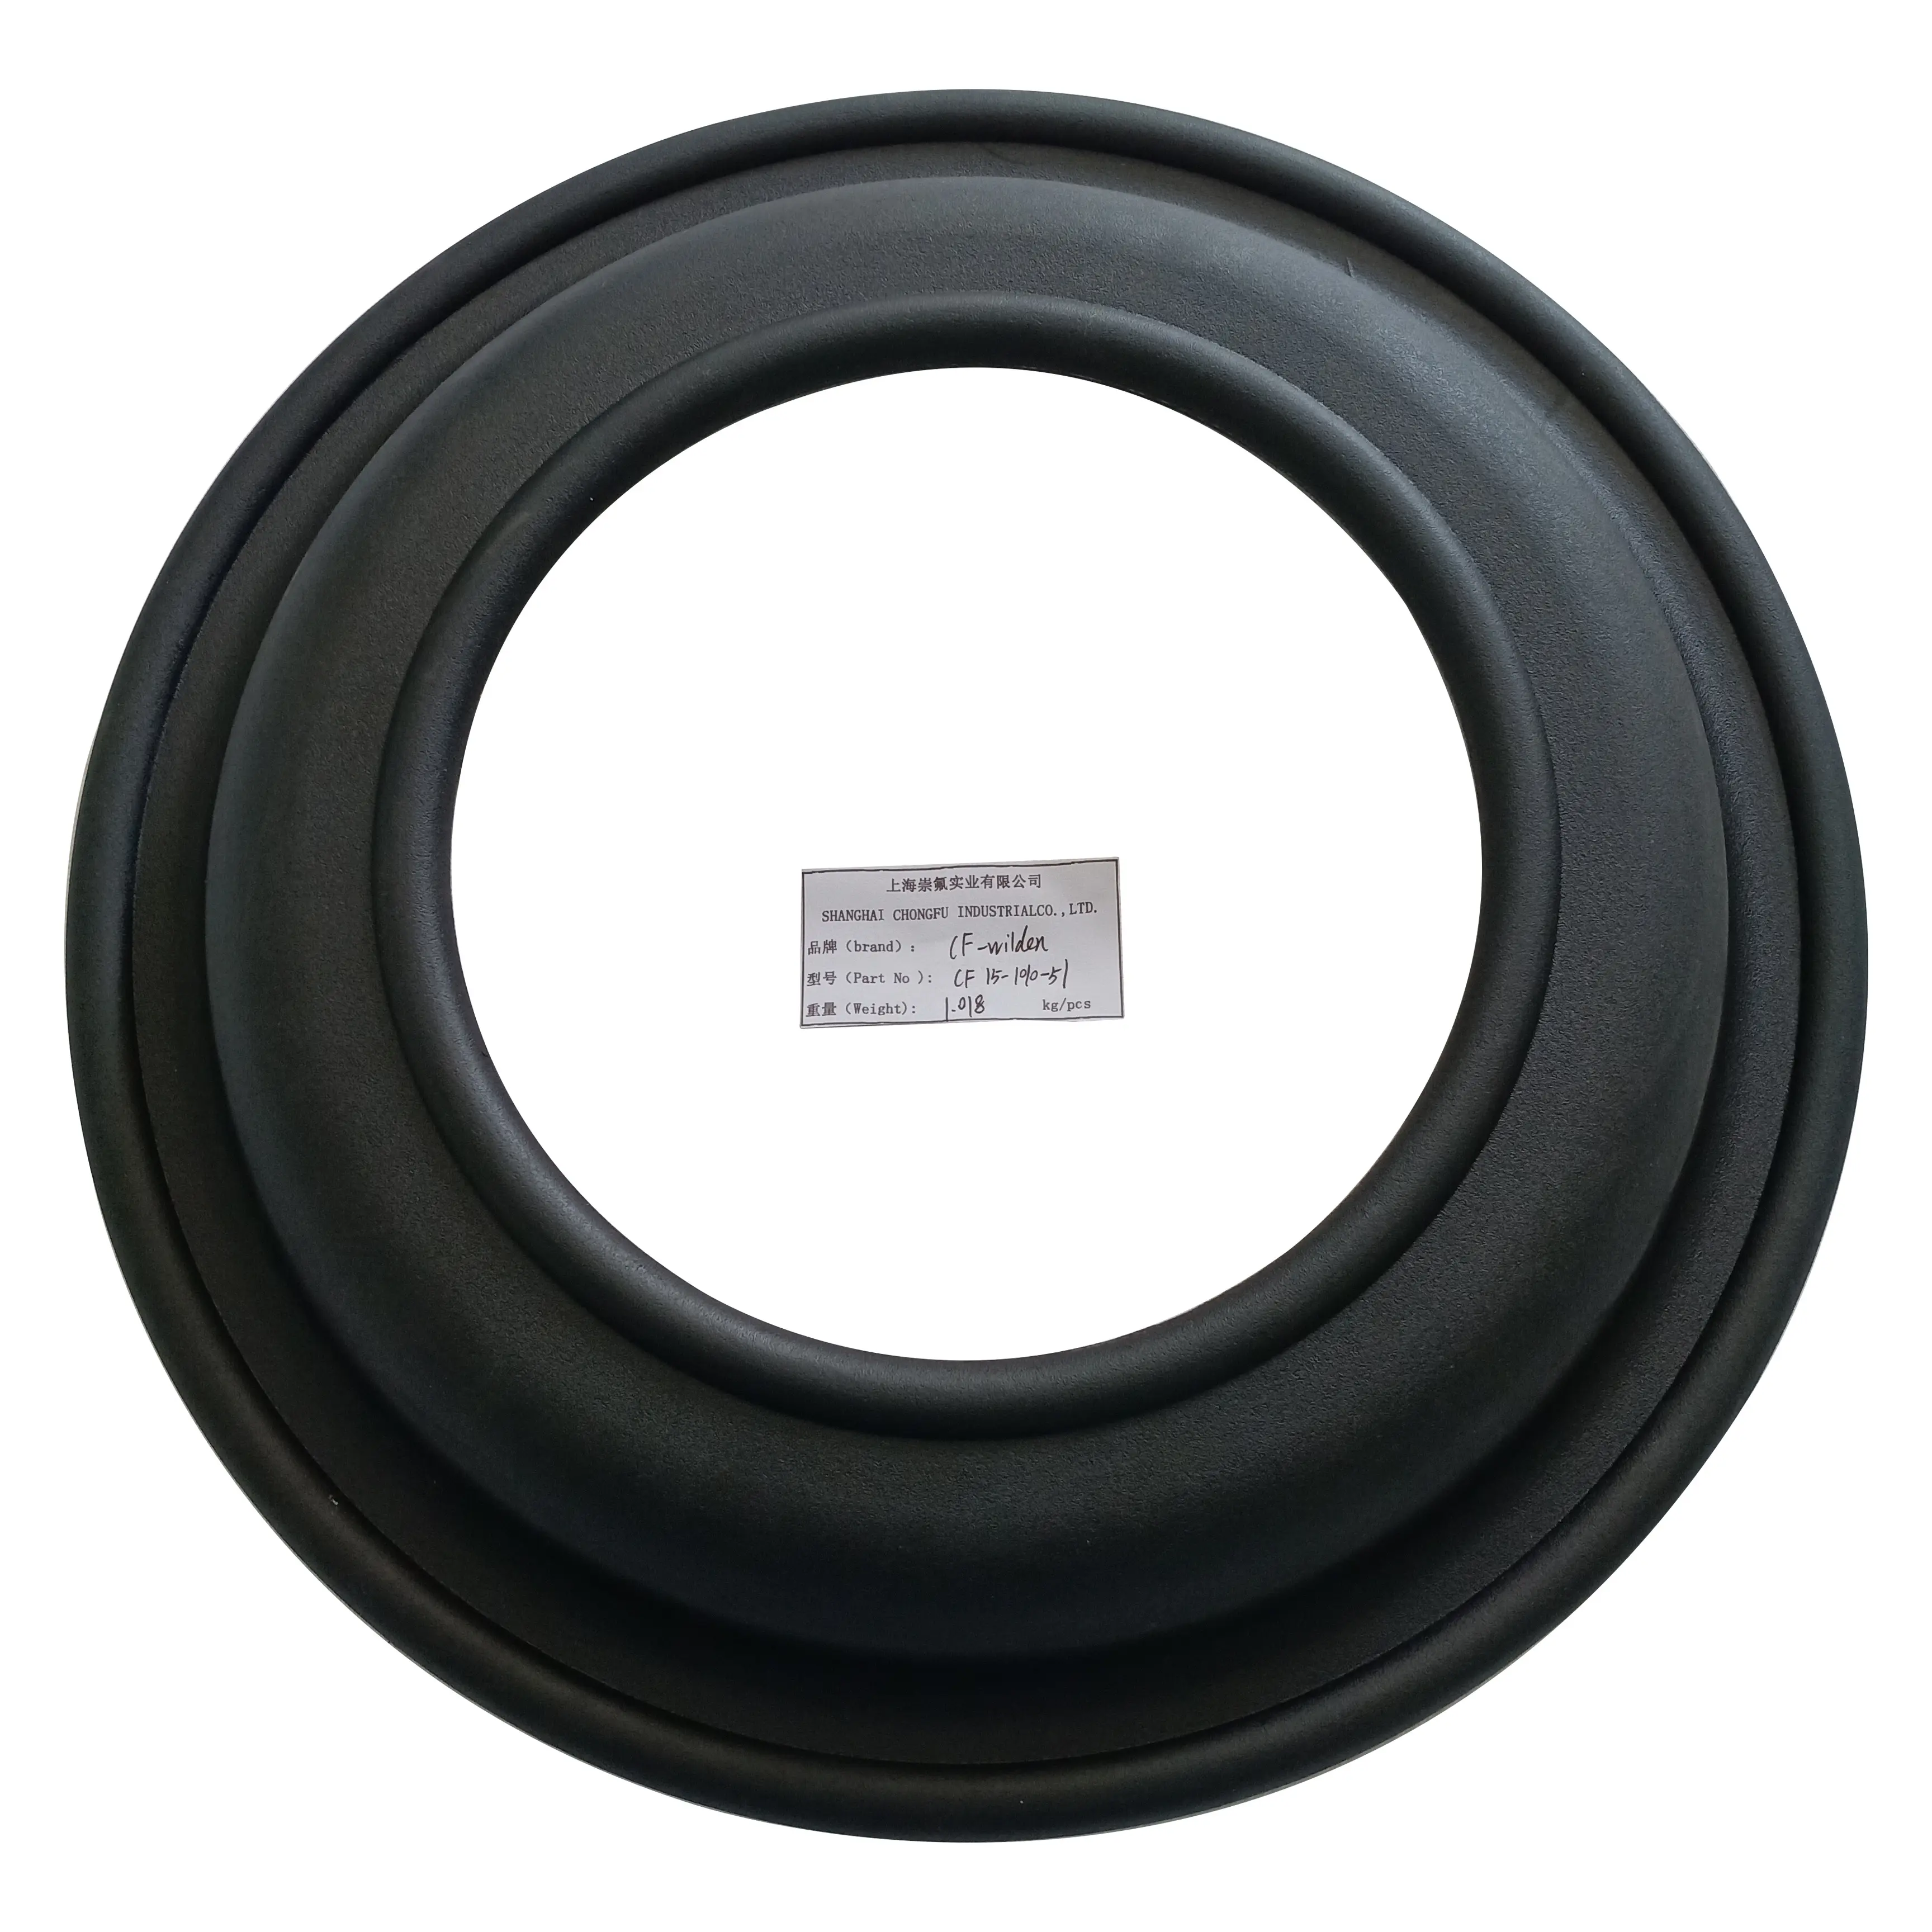 Diodos con goma 15-1010-51, color negro, versátil, CF15-1010-51 de moldura Superior, 1.009kg, chonfu CN; Cartón SHG